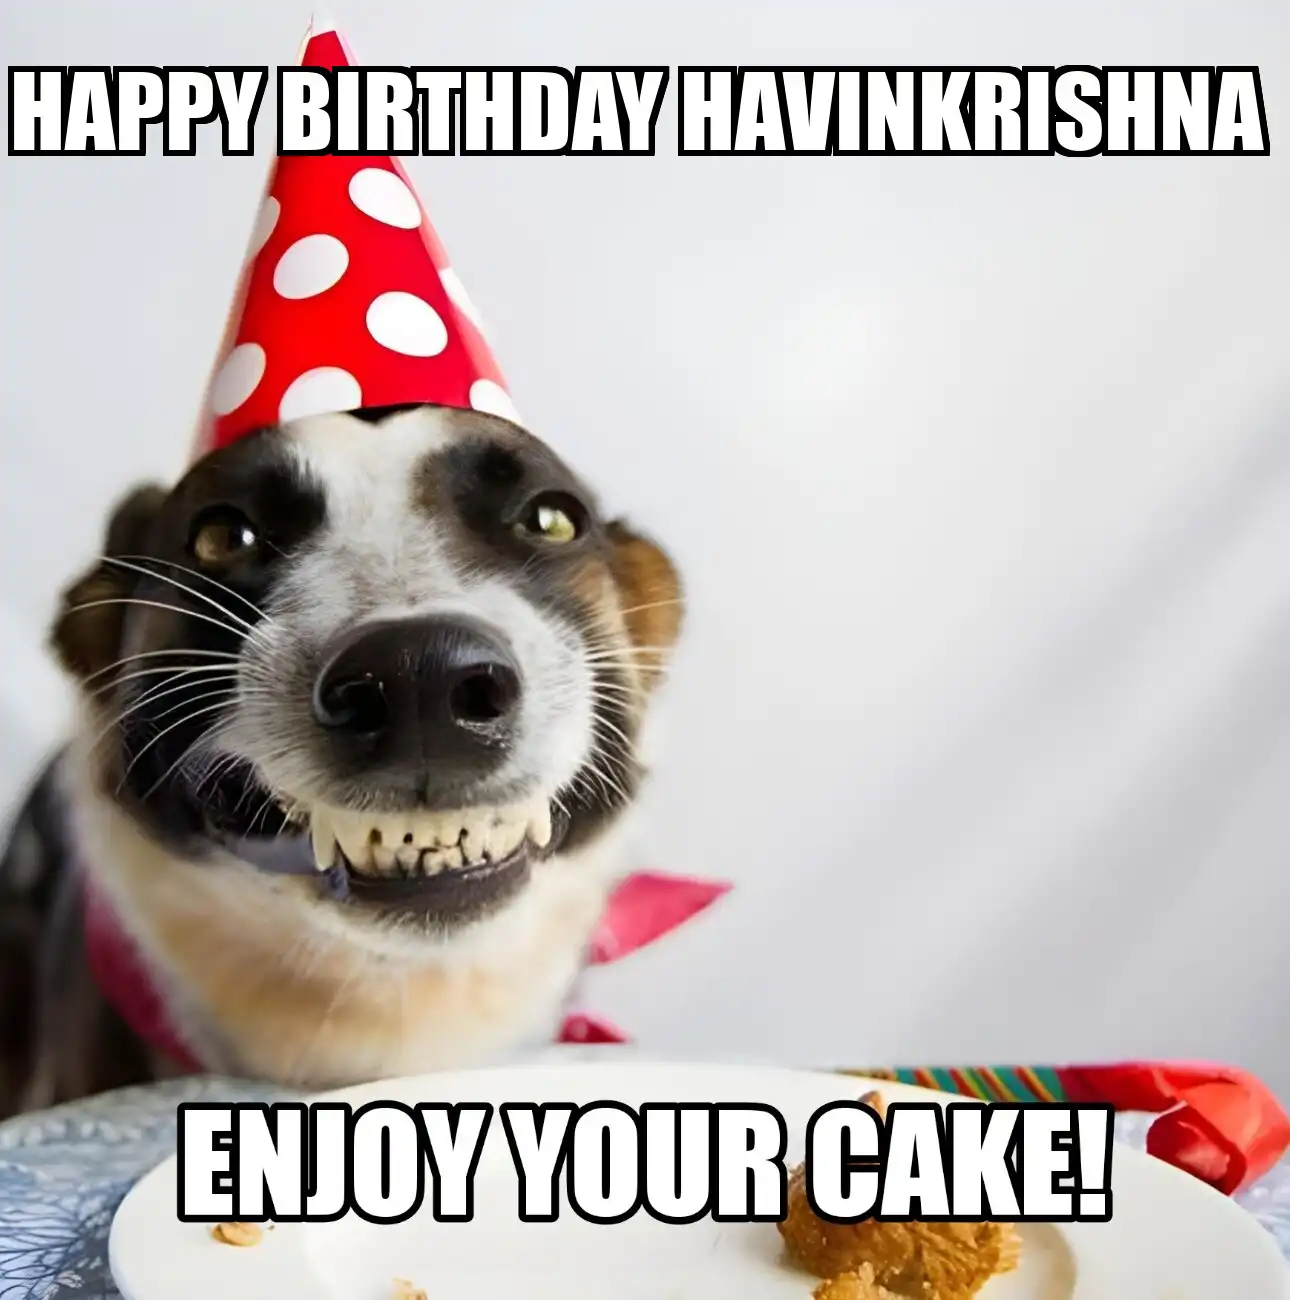 Happy Birthday Havinkrishna Enjoy Your Cake Dog Meme